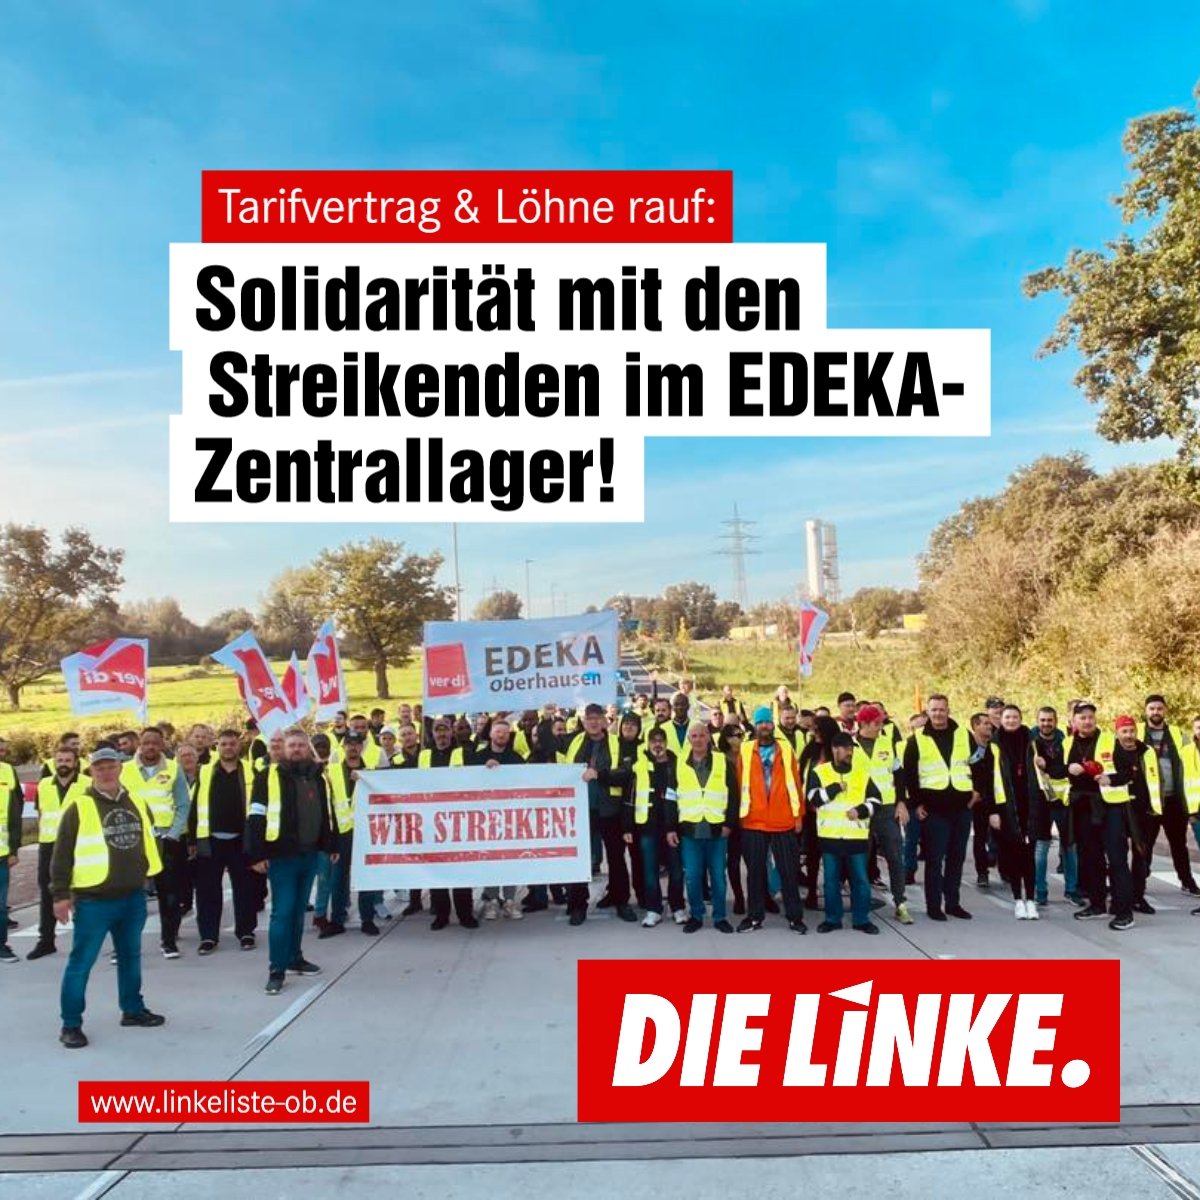 DIE LINKE.LISTE solidarisch mit Streikenden im EDEKA-Zentrallager